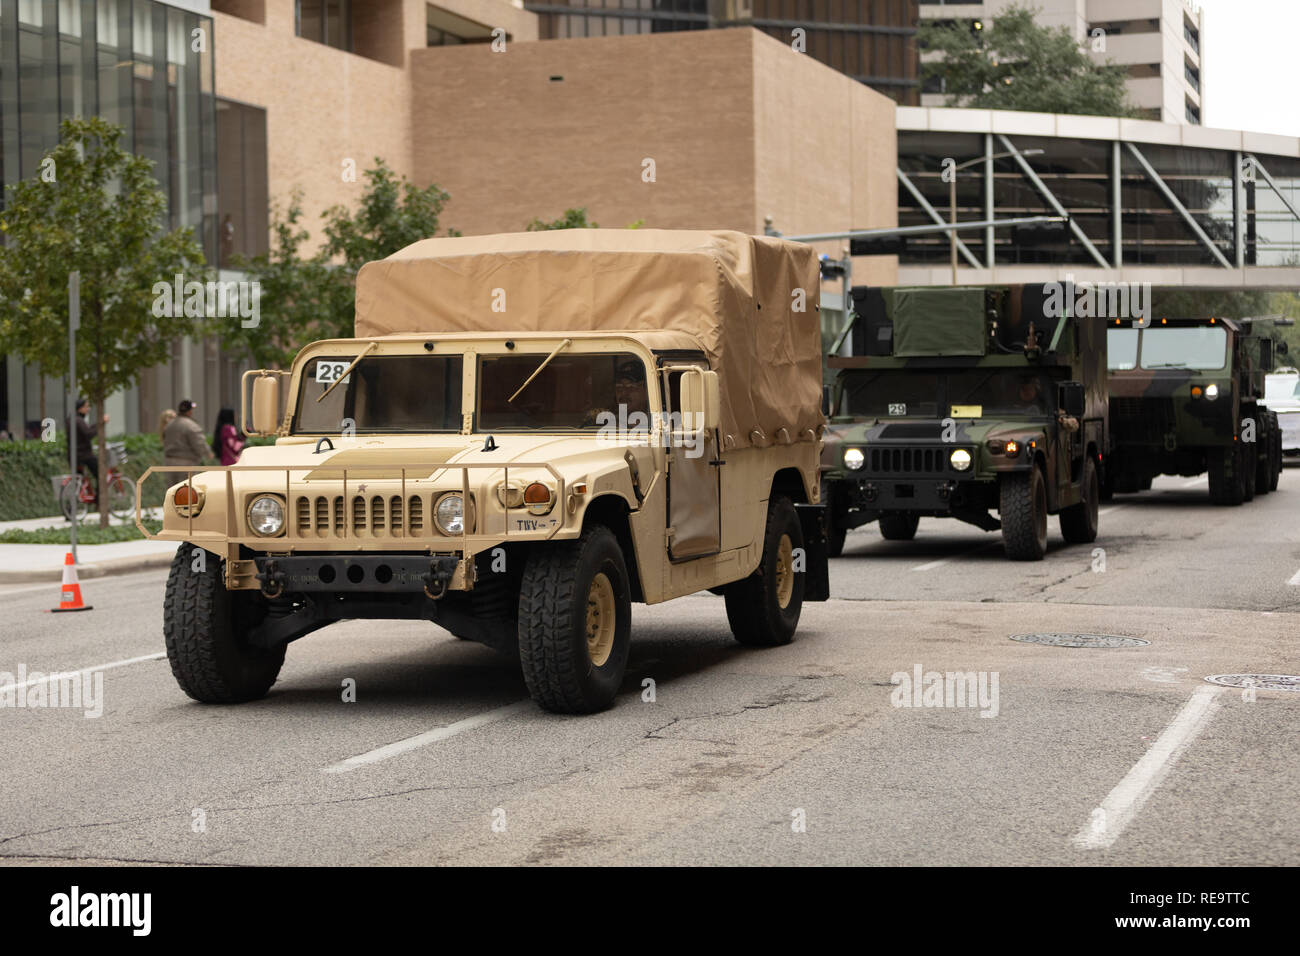 Houston, Texas, Stati Uniti d'America - 11 Novembre 2018: gli eroi americani Parade, militare Humvee percorrendo la strada Foto Stock